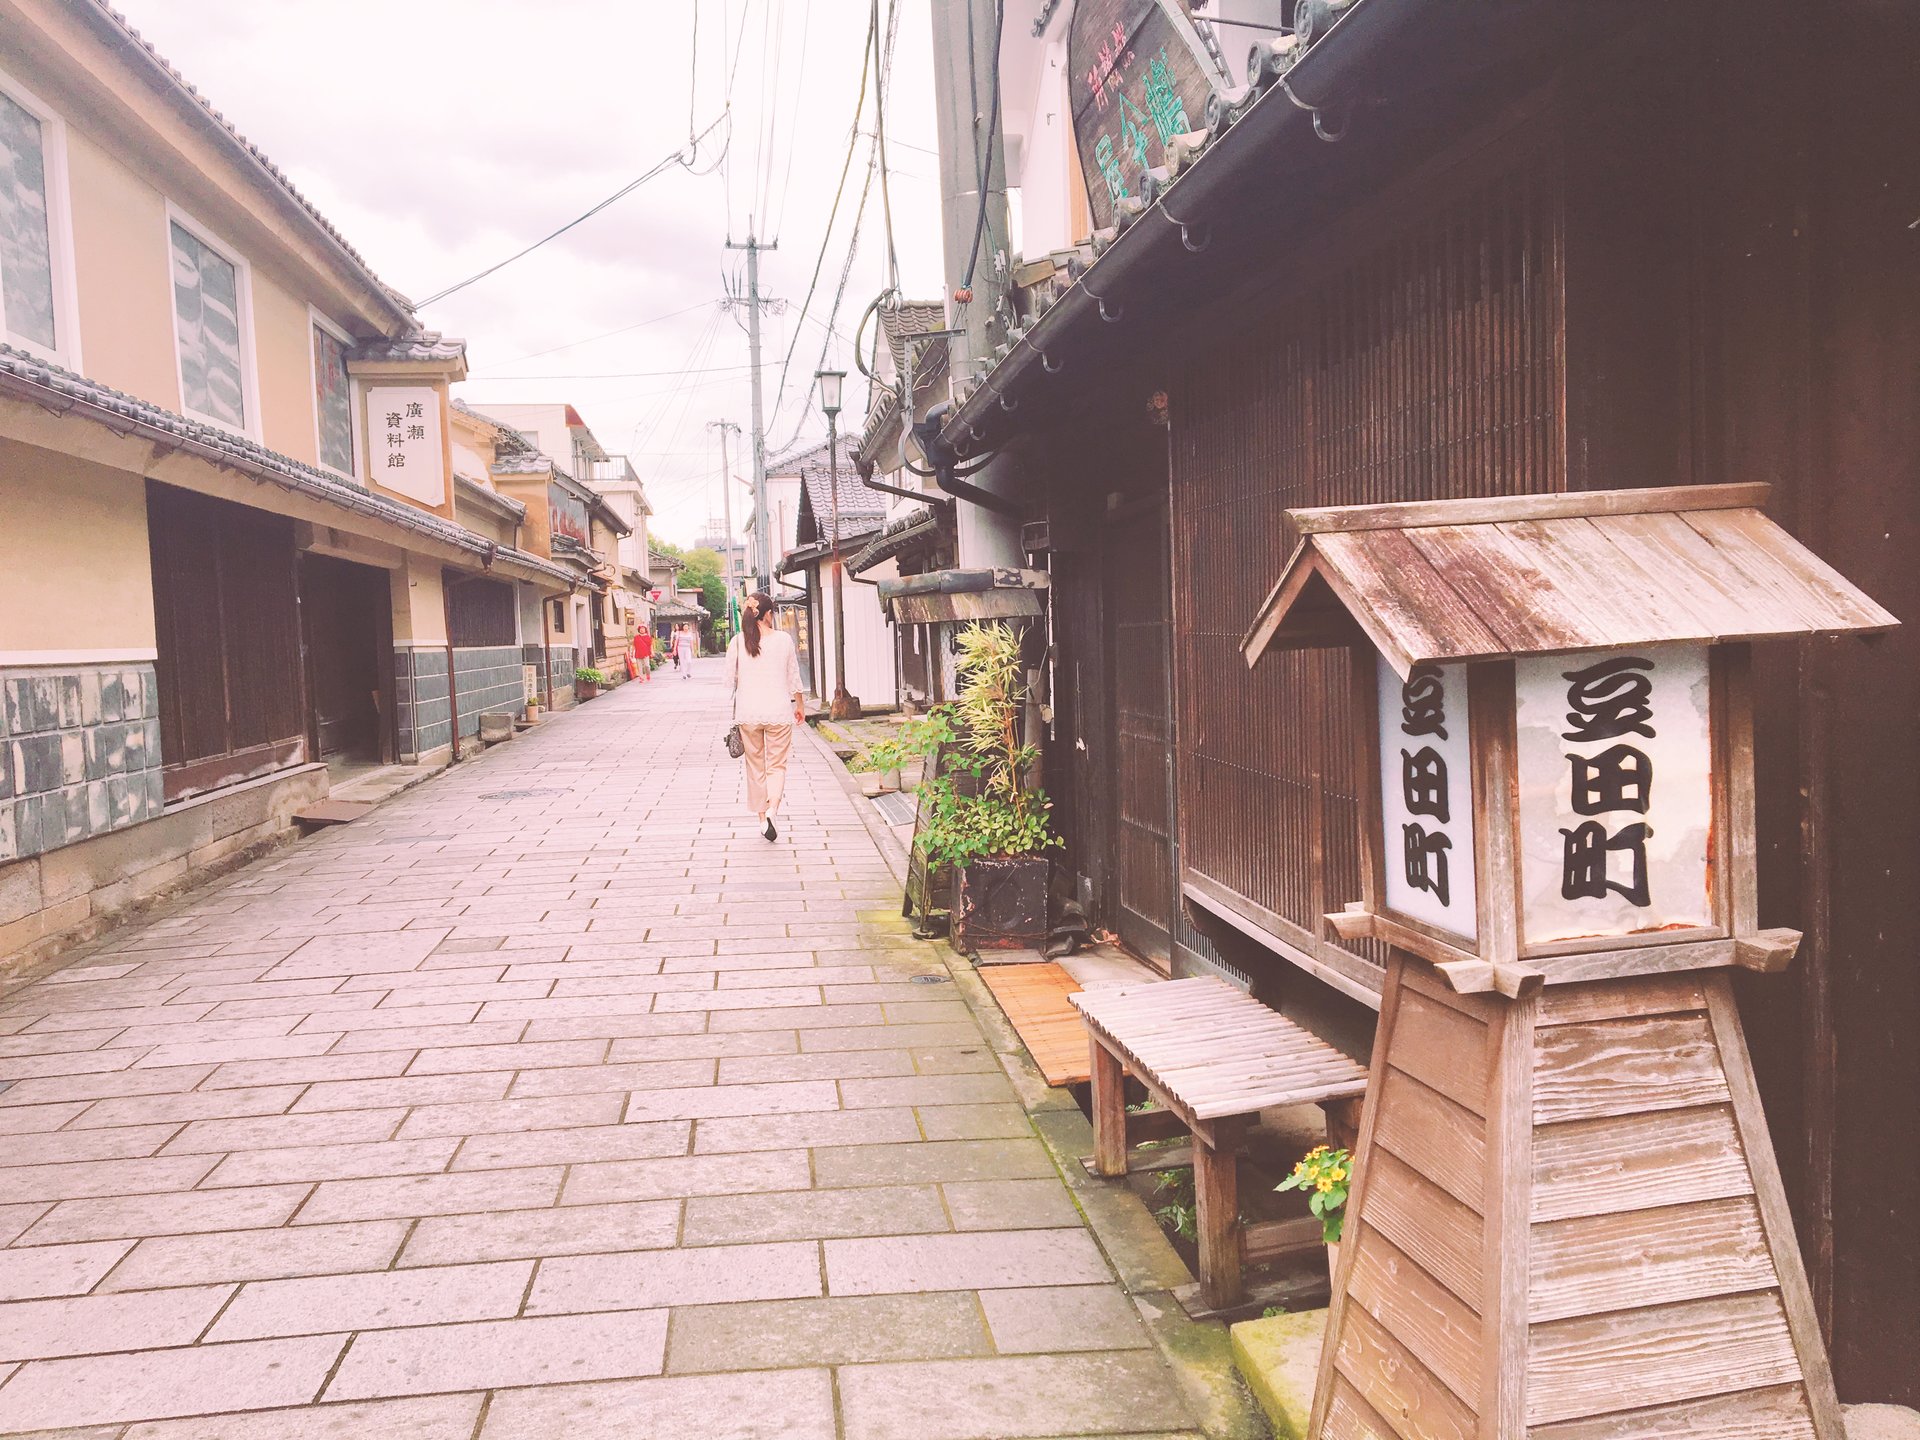 日田豆田町散策でのんびりお散歩。
可愛いお店やカフェでゆっくり☆日田ドライブ